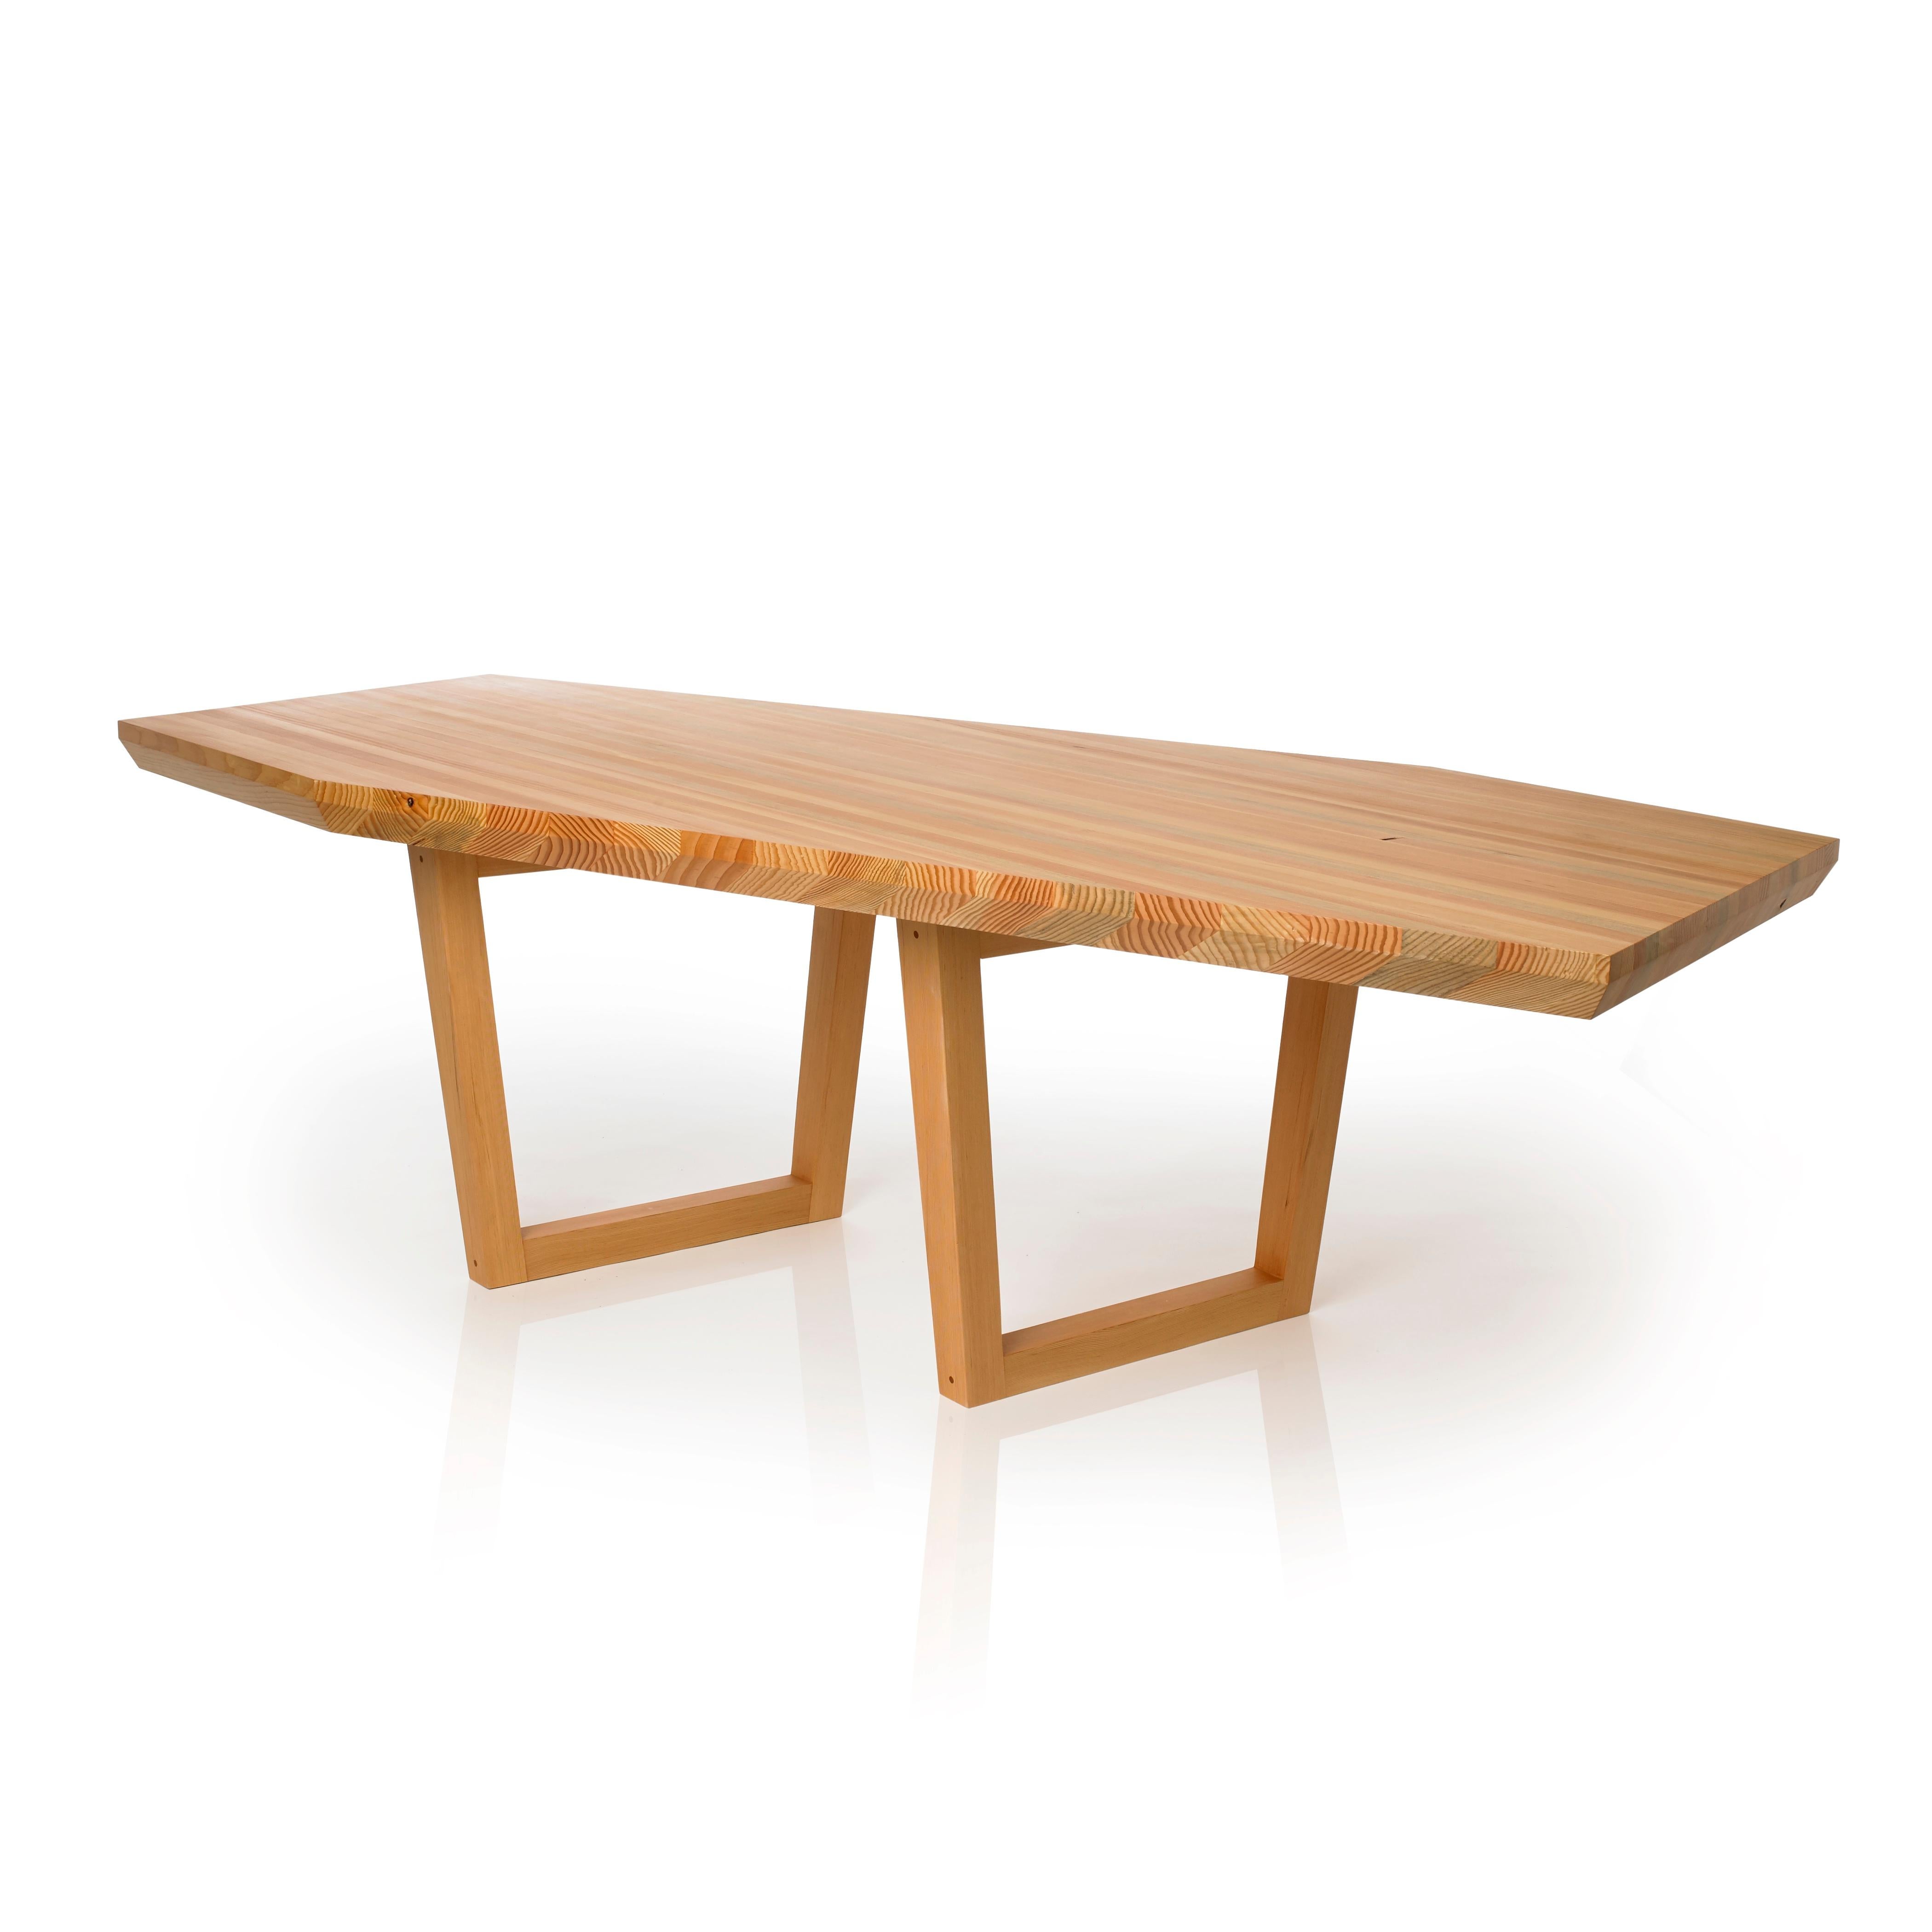 Kaiwa - frei übersetzt aus dem Japanischen bedeutet das Gespräch. Dieser Tisch wurde mit der Absicht entworfen, Verbindung und Dialog zu fördern. Er ist mehr als nur ein Möbelstück; er ist ein Kunstwerk, das zu Interaktion und Engagement